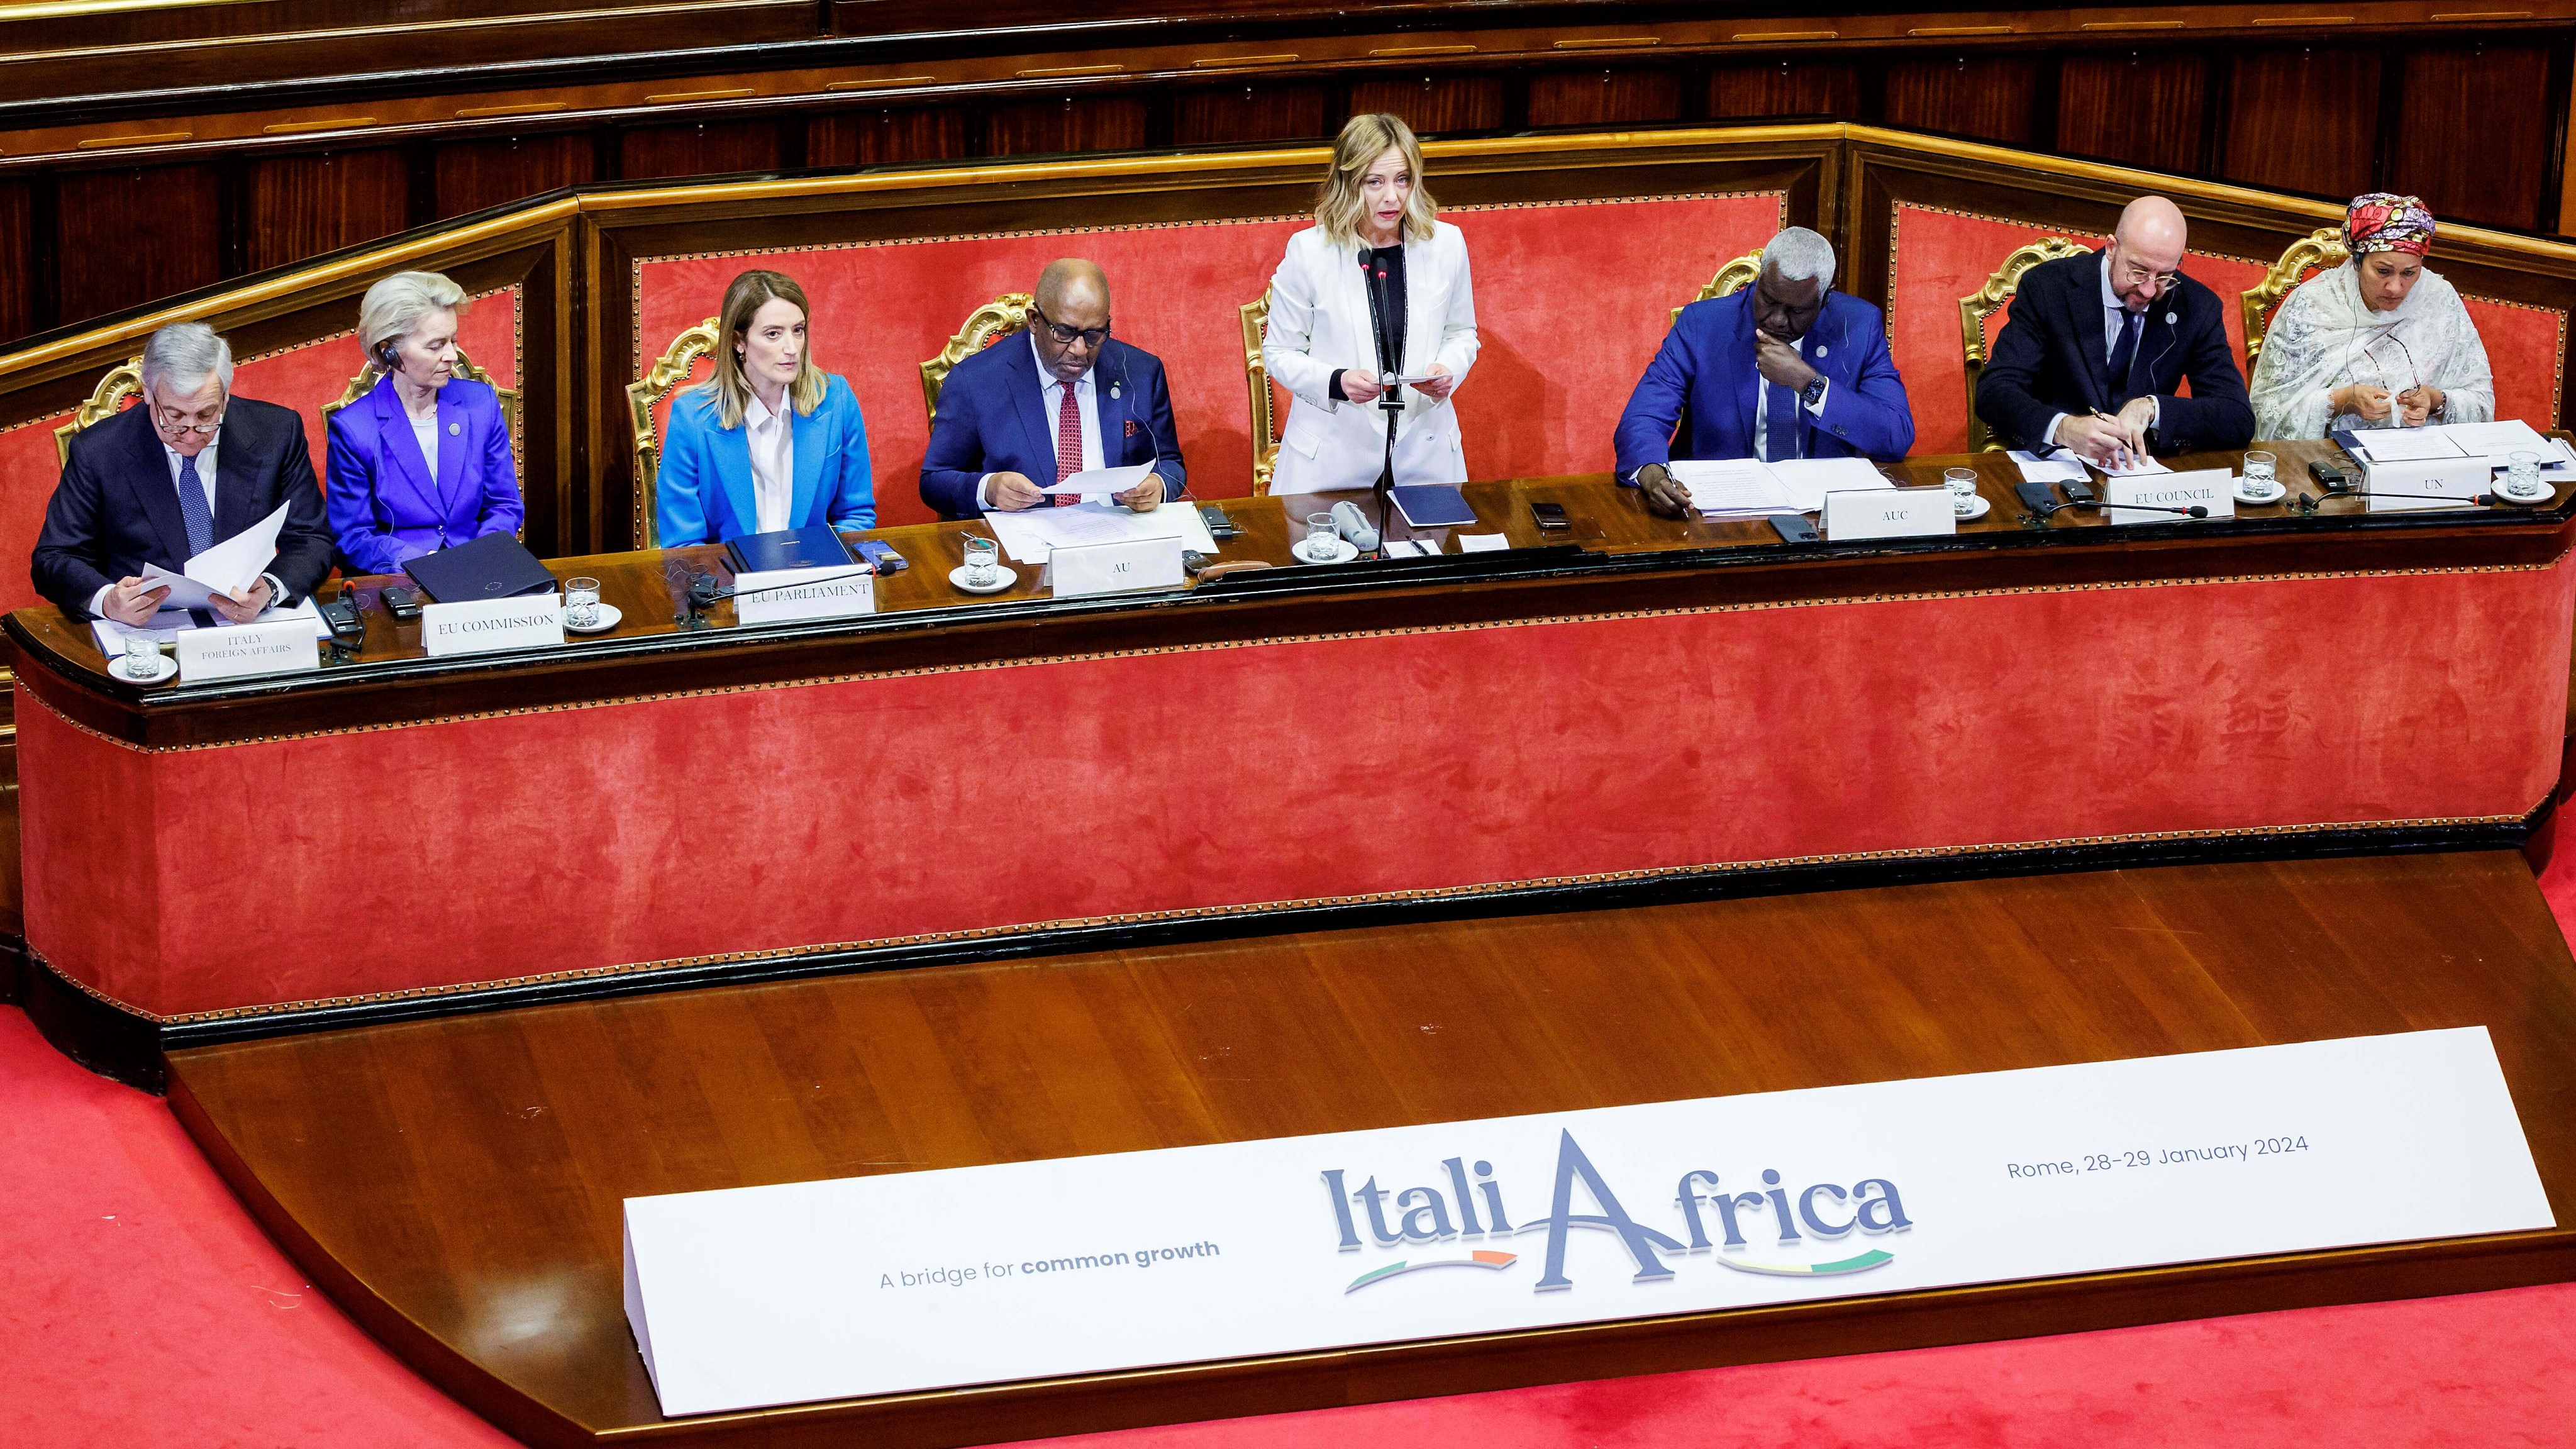 意大利总理乔治亚·梅洛尼在意大利-非洲峰会开始时发表讲话。